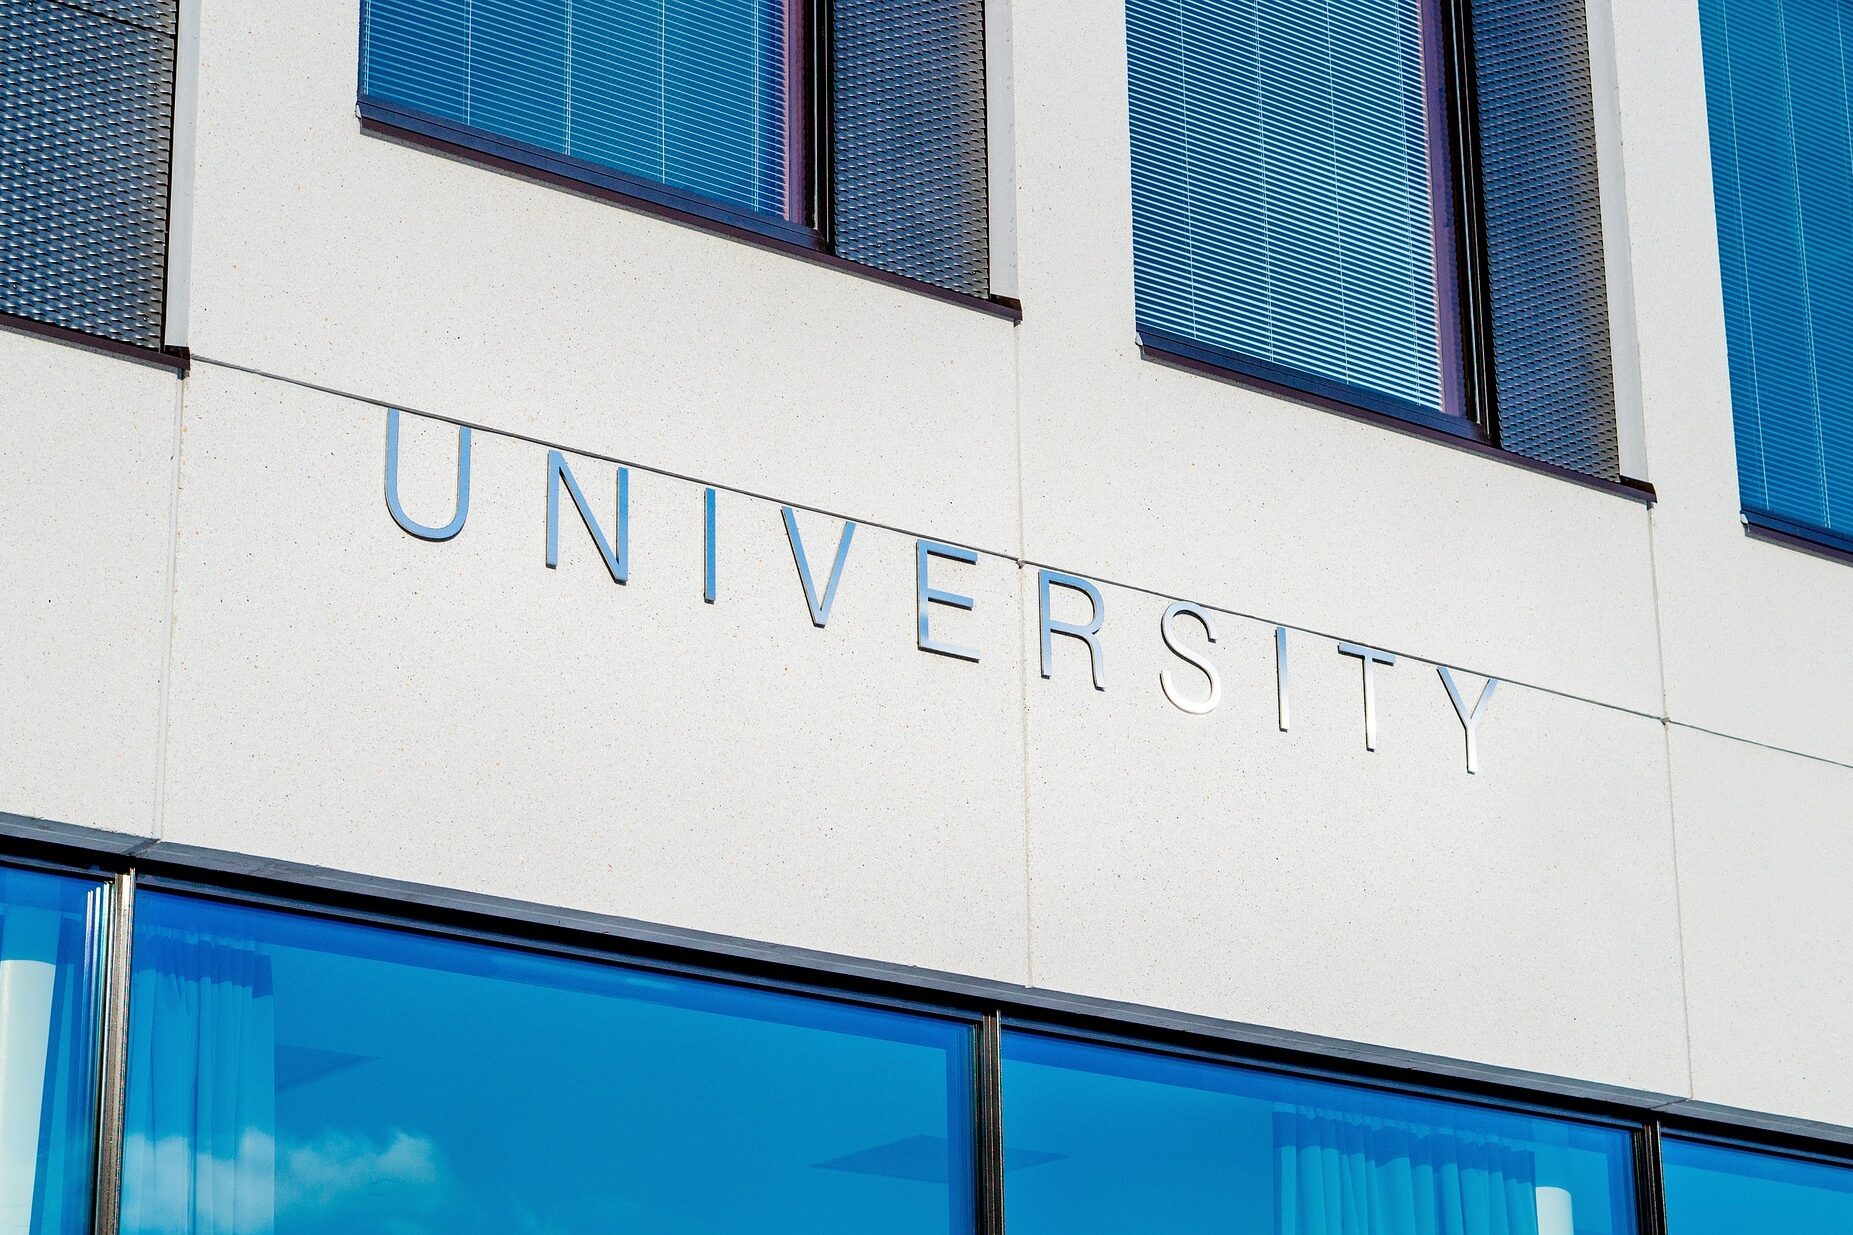 Abbildung eines Gebäudes mit der Aufschrift "University"